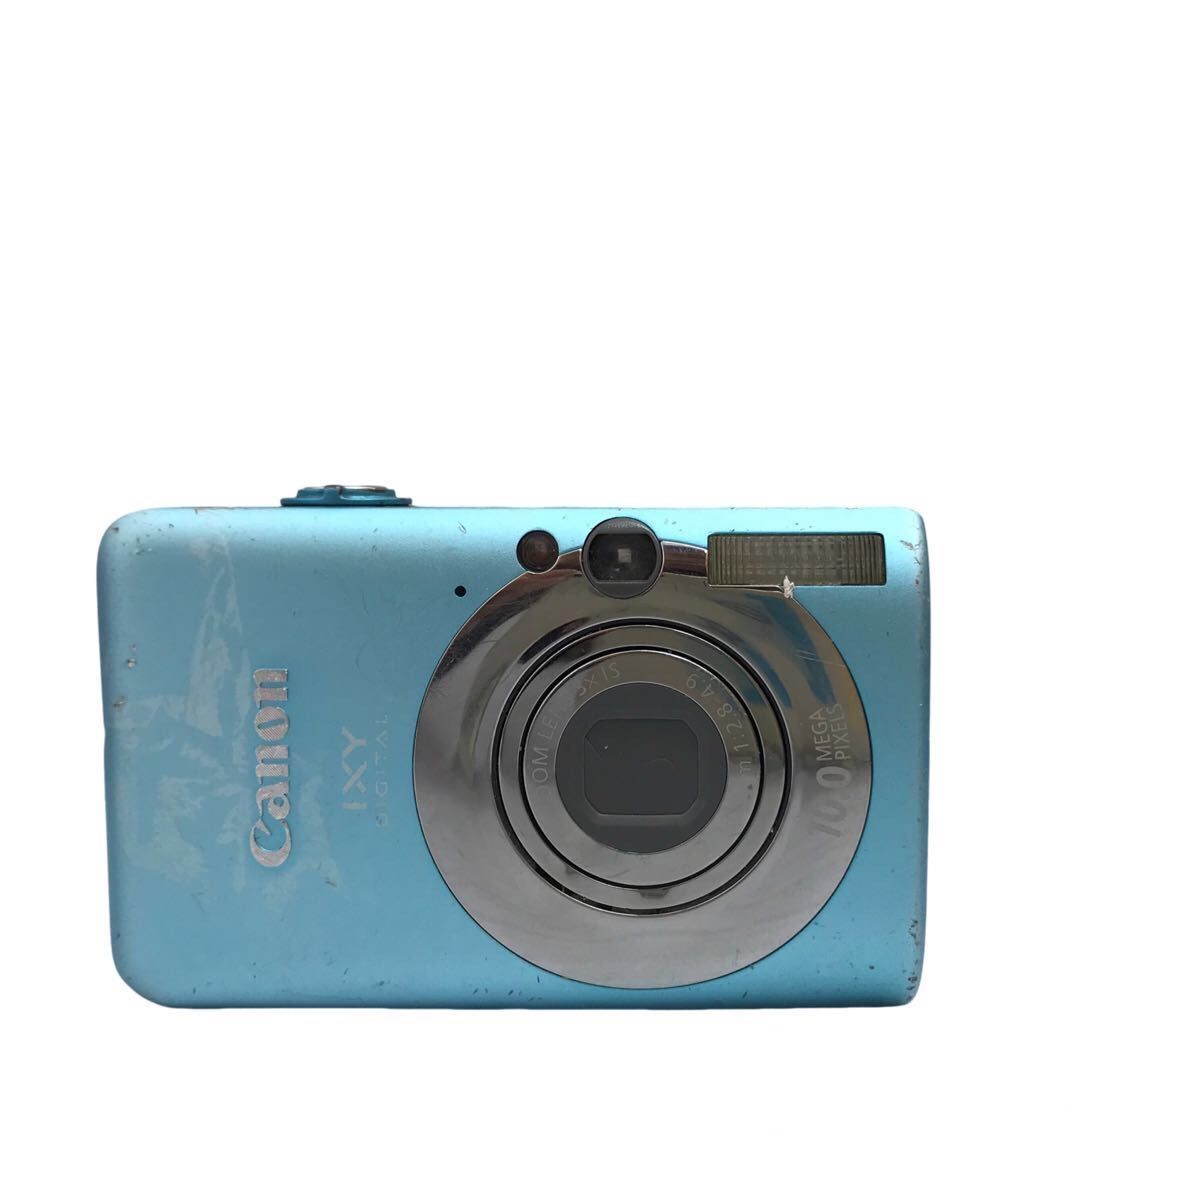 171【ジャンク品】Canon (乾電池タイプ) Nikon FUJIFILM デジタルカメラ 6台セット